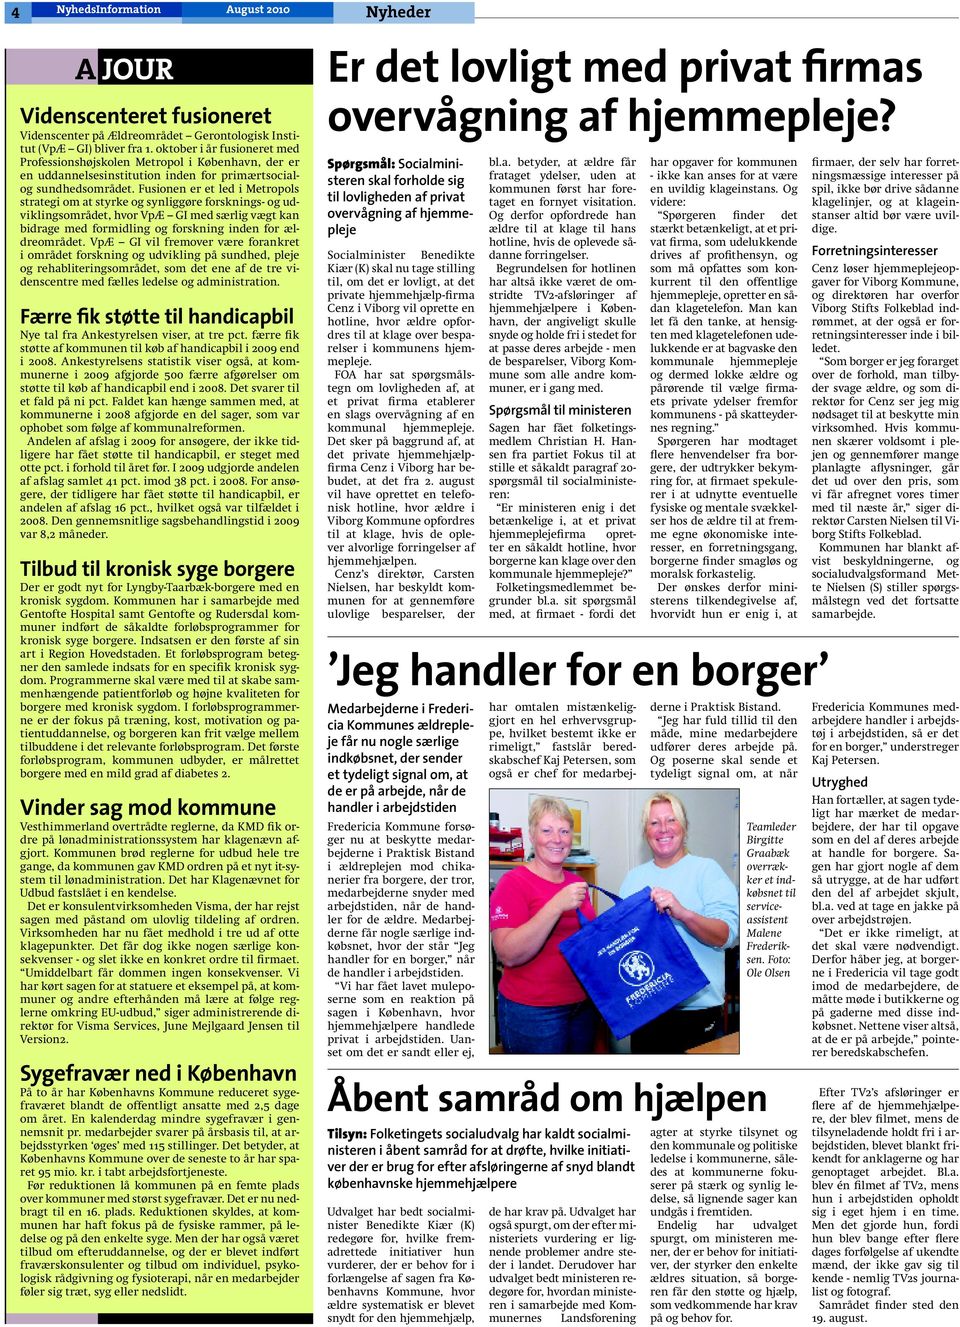 Uafhængighed giver bedre liv. Sorø Kommune vil gøre ældre mere selvhjulpne  side 8 - PDF Gratis download